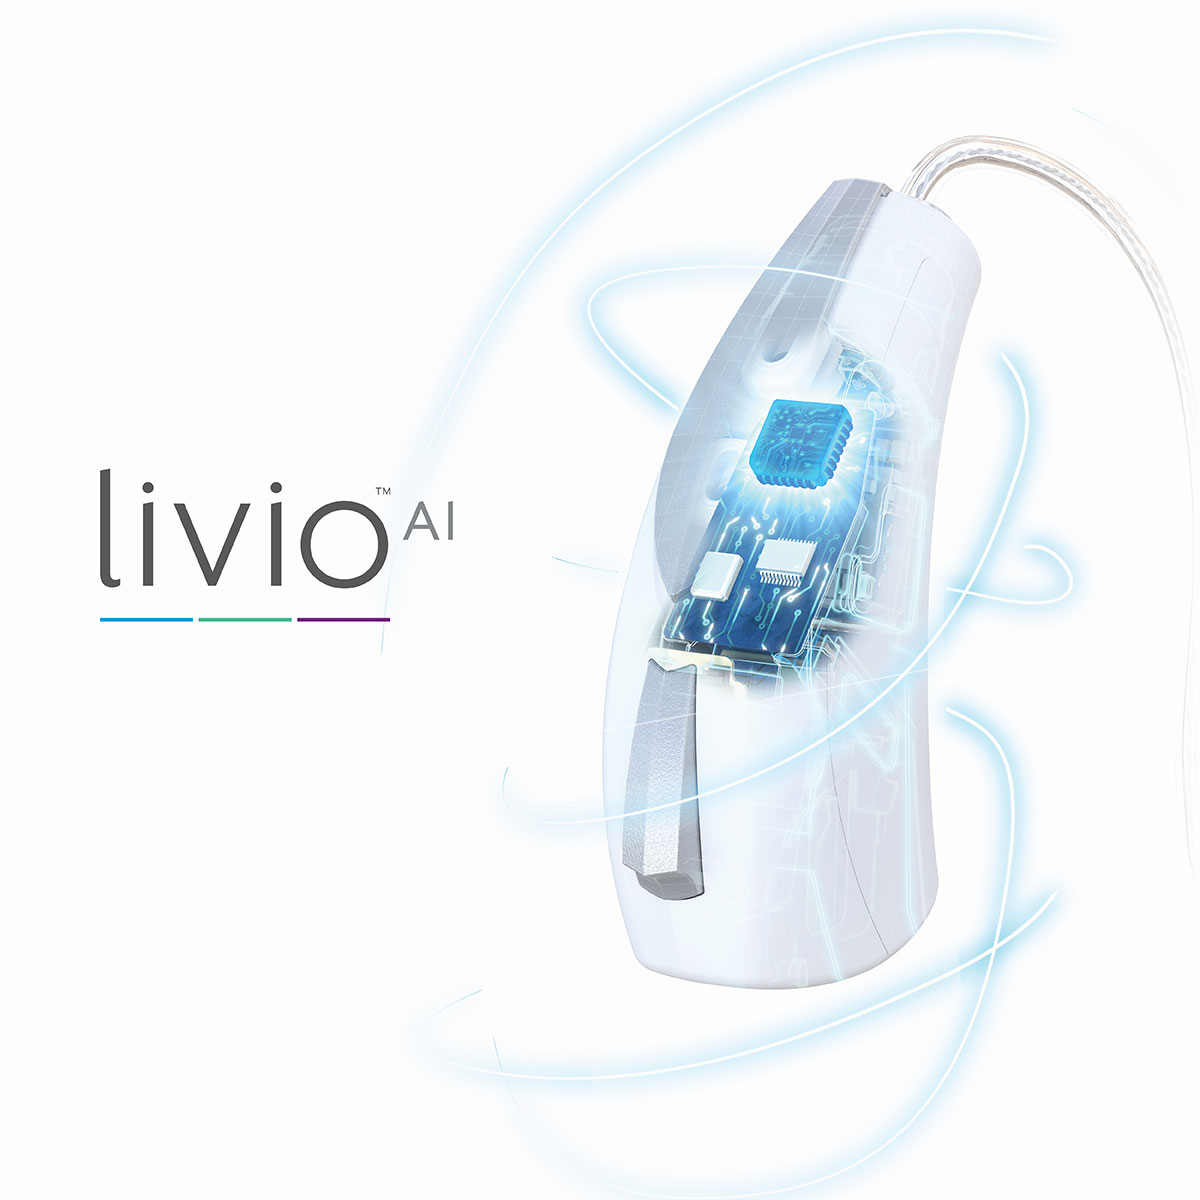 Il 23 marzo arriva in Italia Livio AI di Starkey, l’apparecchio acustico Hi-Tech che rivoluziona il settore